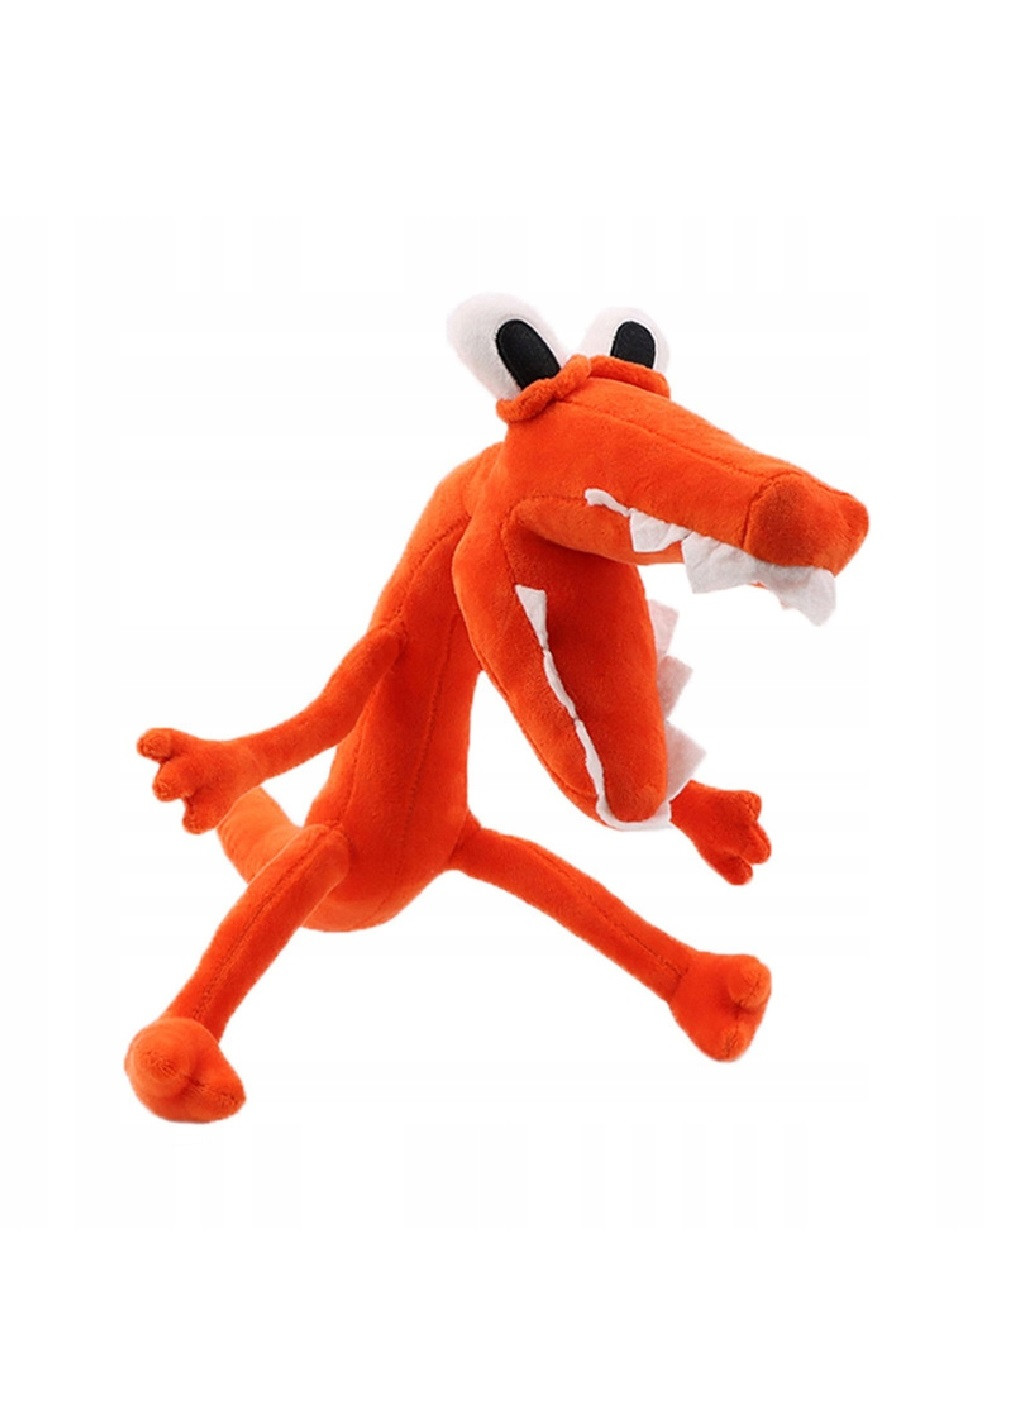 Оригинальная детская мягкая плюшевая игрушка для детей персонаж радужные друзья роболокс 37 см (475400-Prob) Крокодил Оранж Unbranded (266987848)